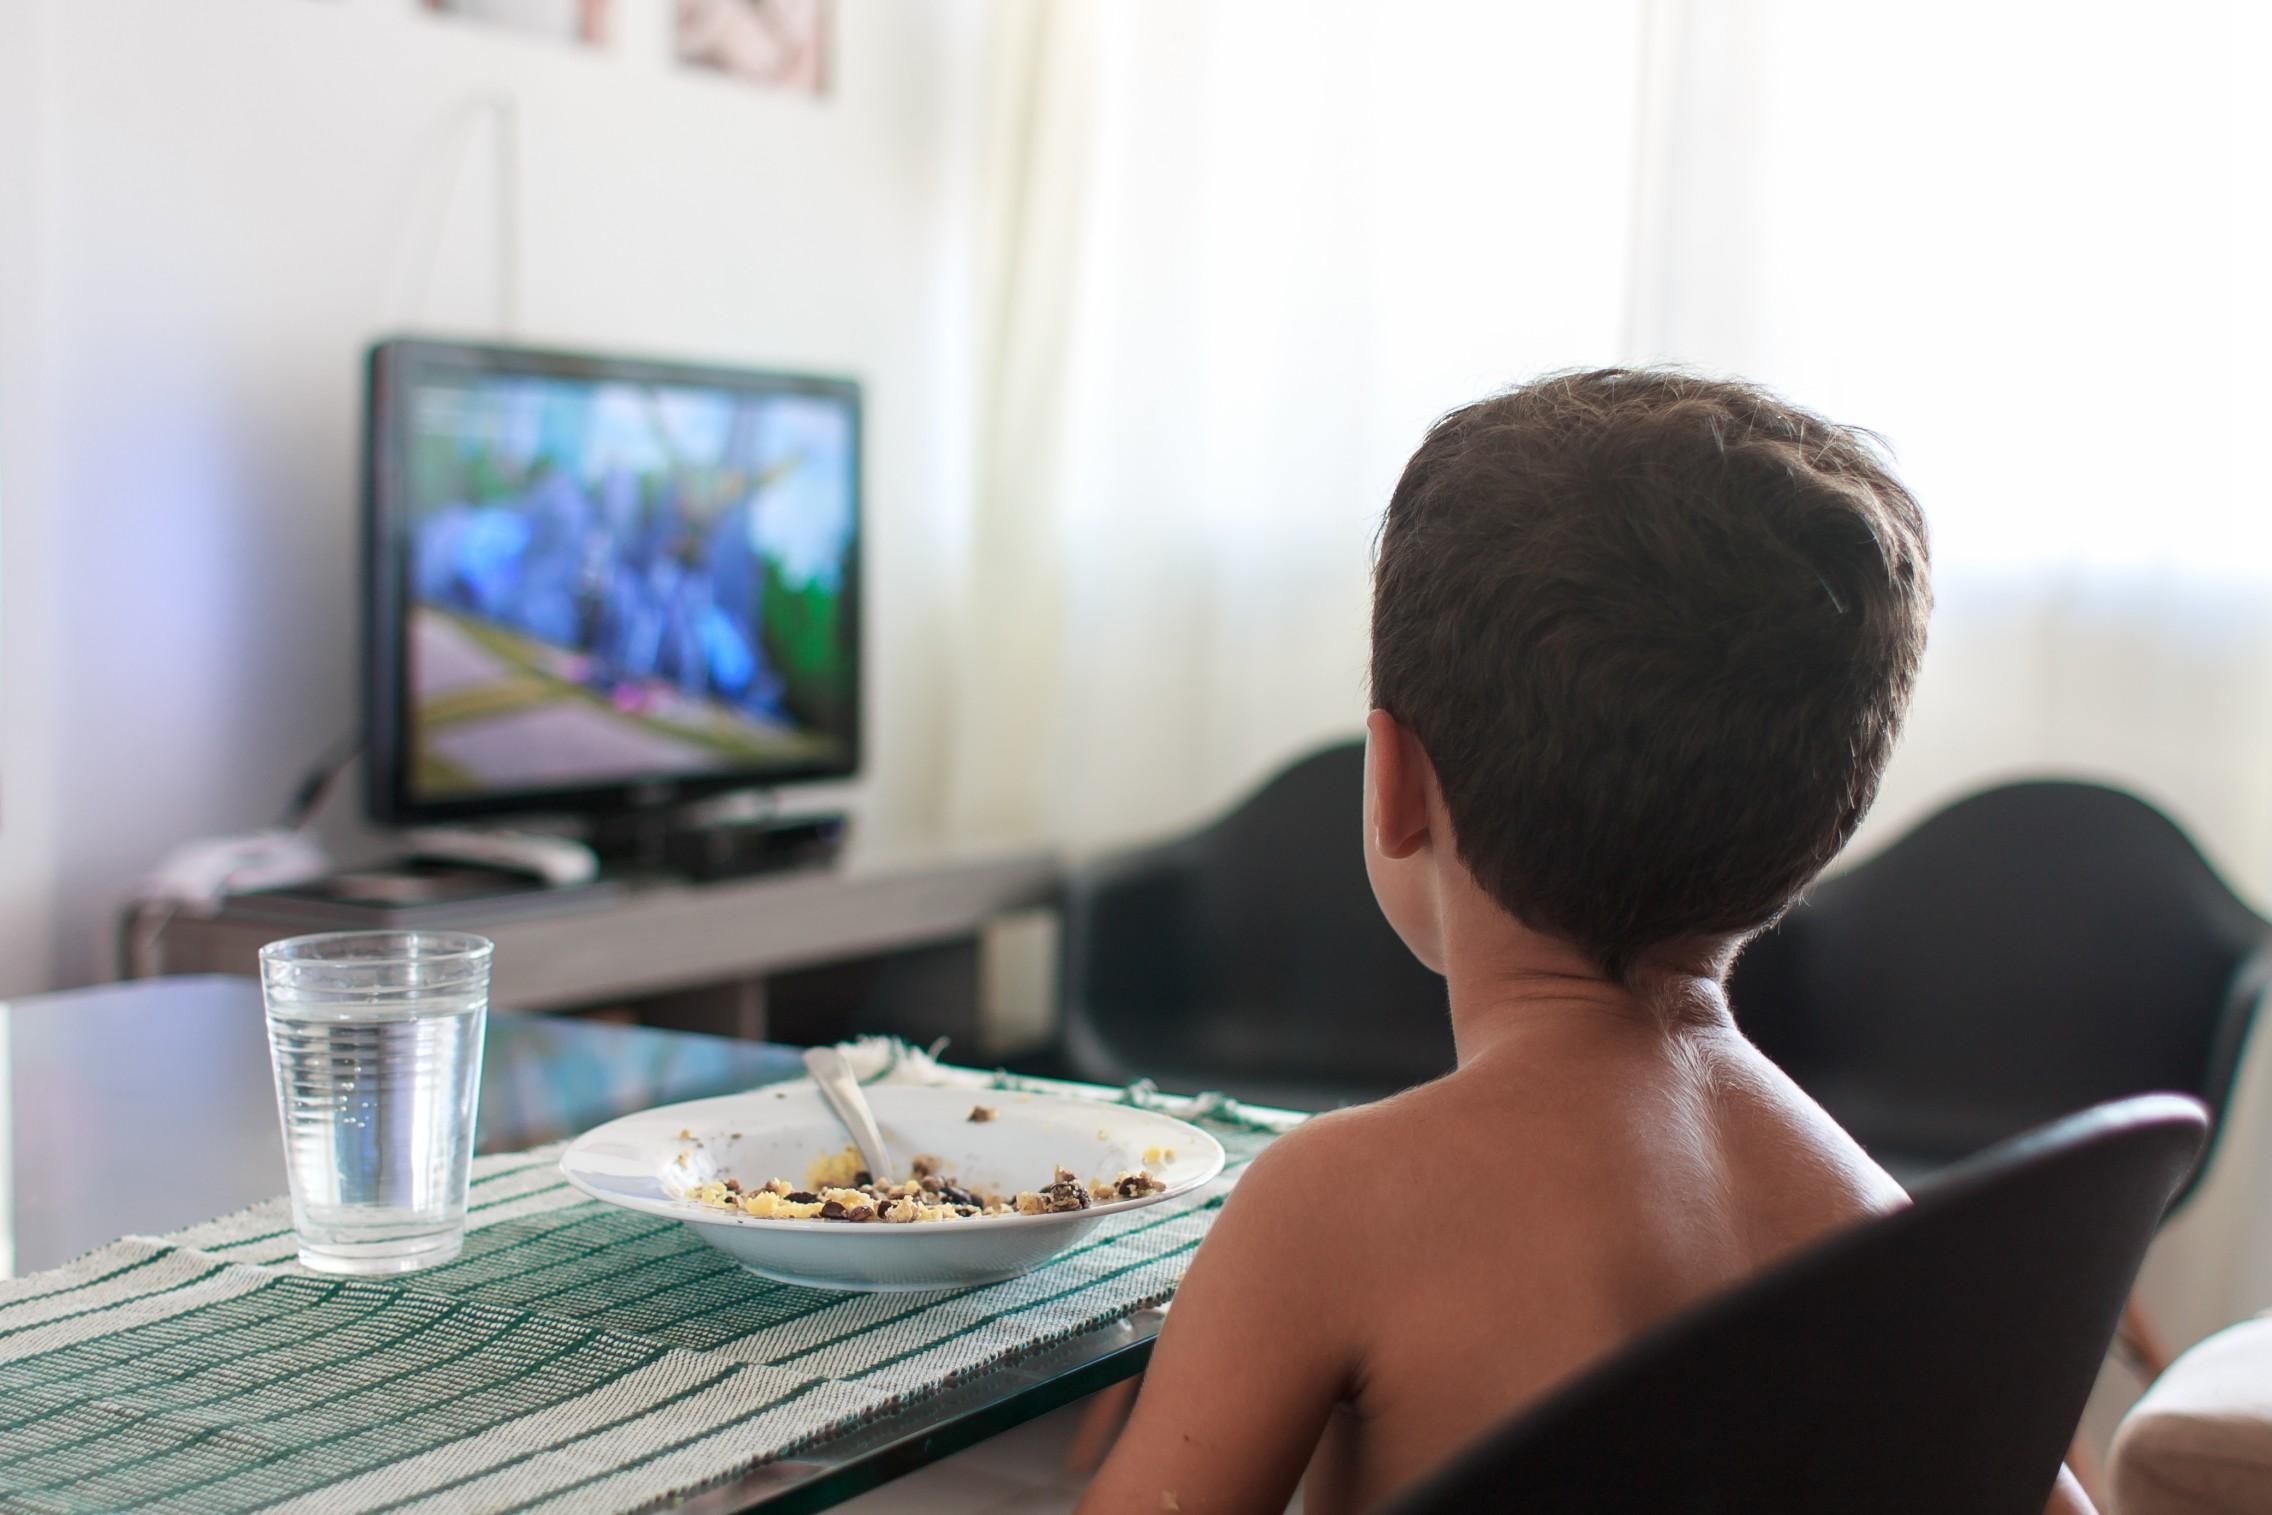 Як перегляд телебачення впливає на навчання учнів: цікаве дослідження